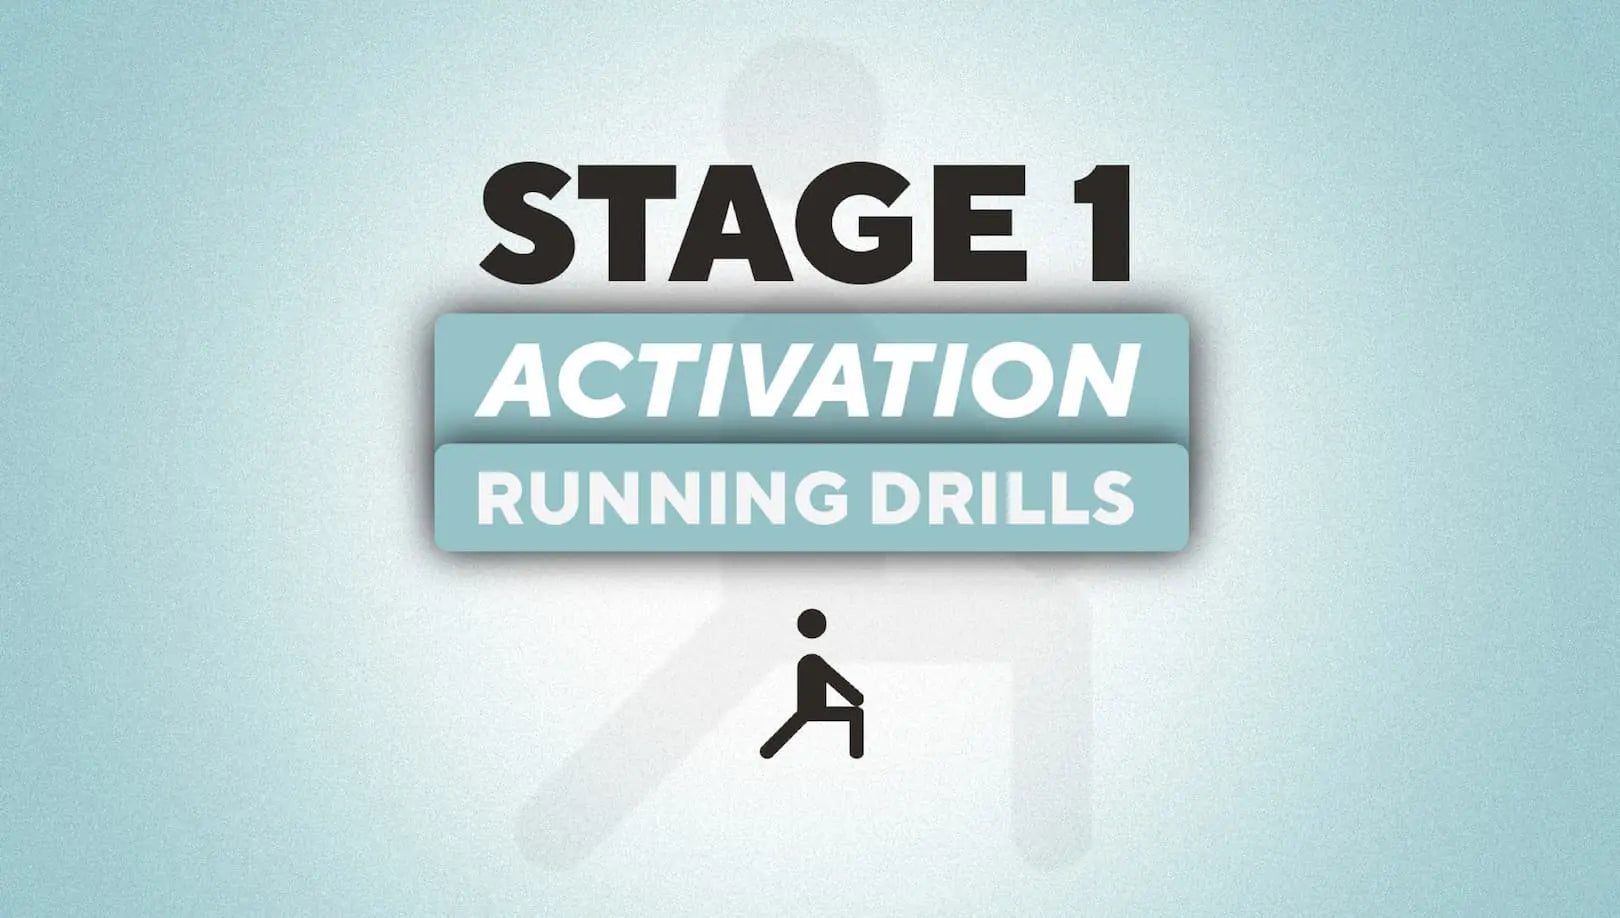 Activation Running Drills Stage 1 Roam NZ Australia